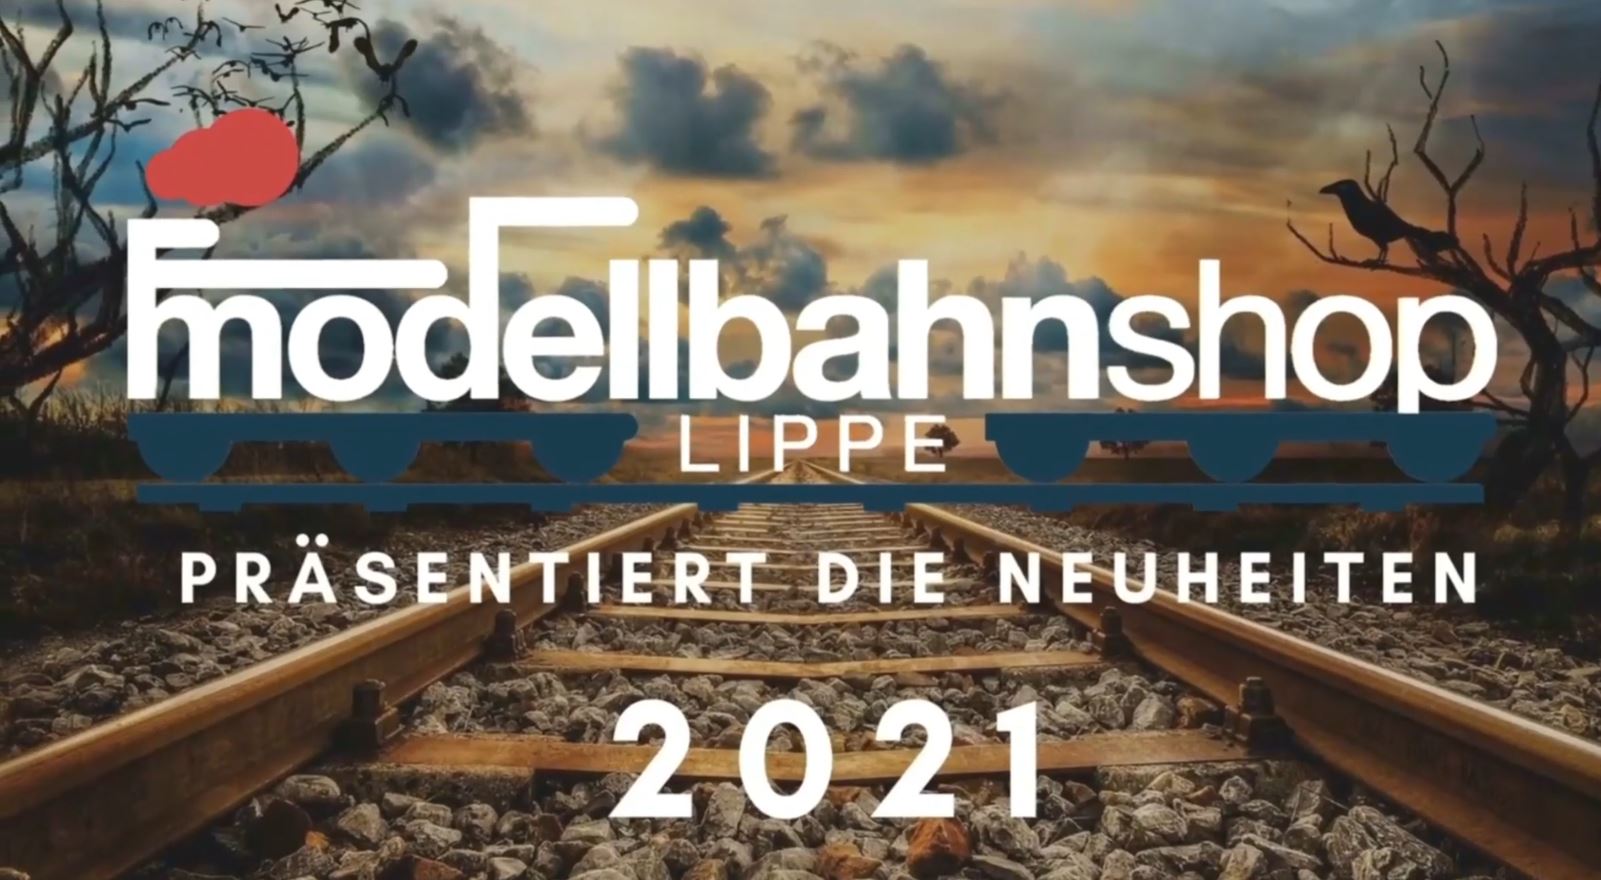 [Repost] Modellbahn - Neuheiten 2021-2022